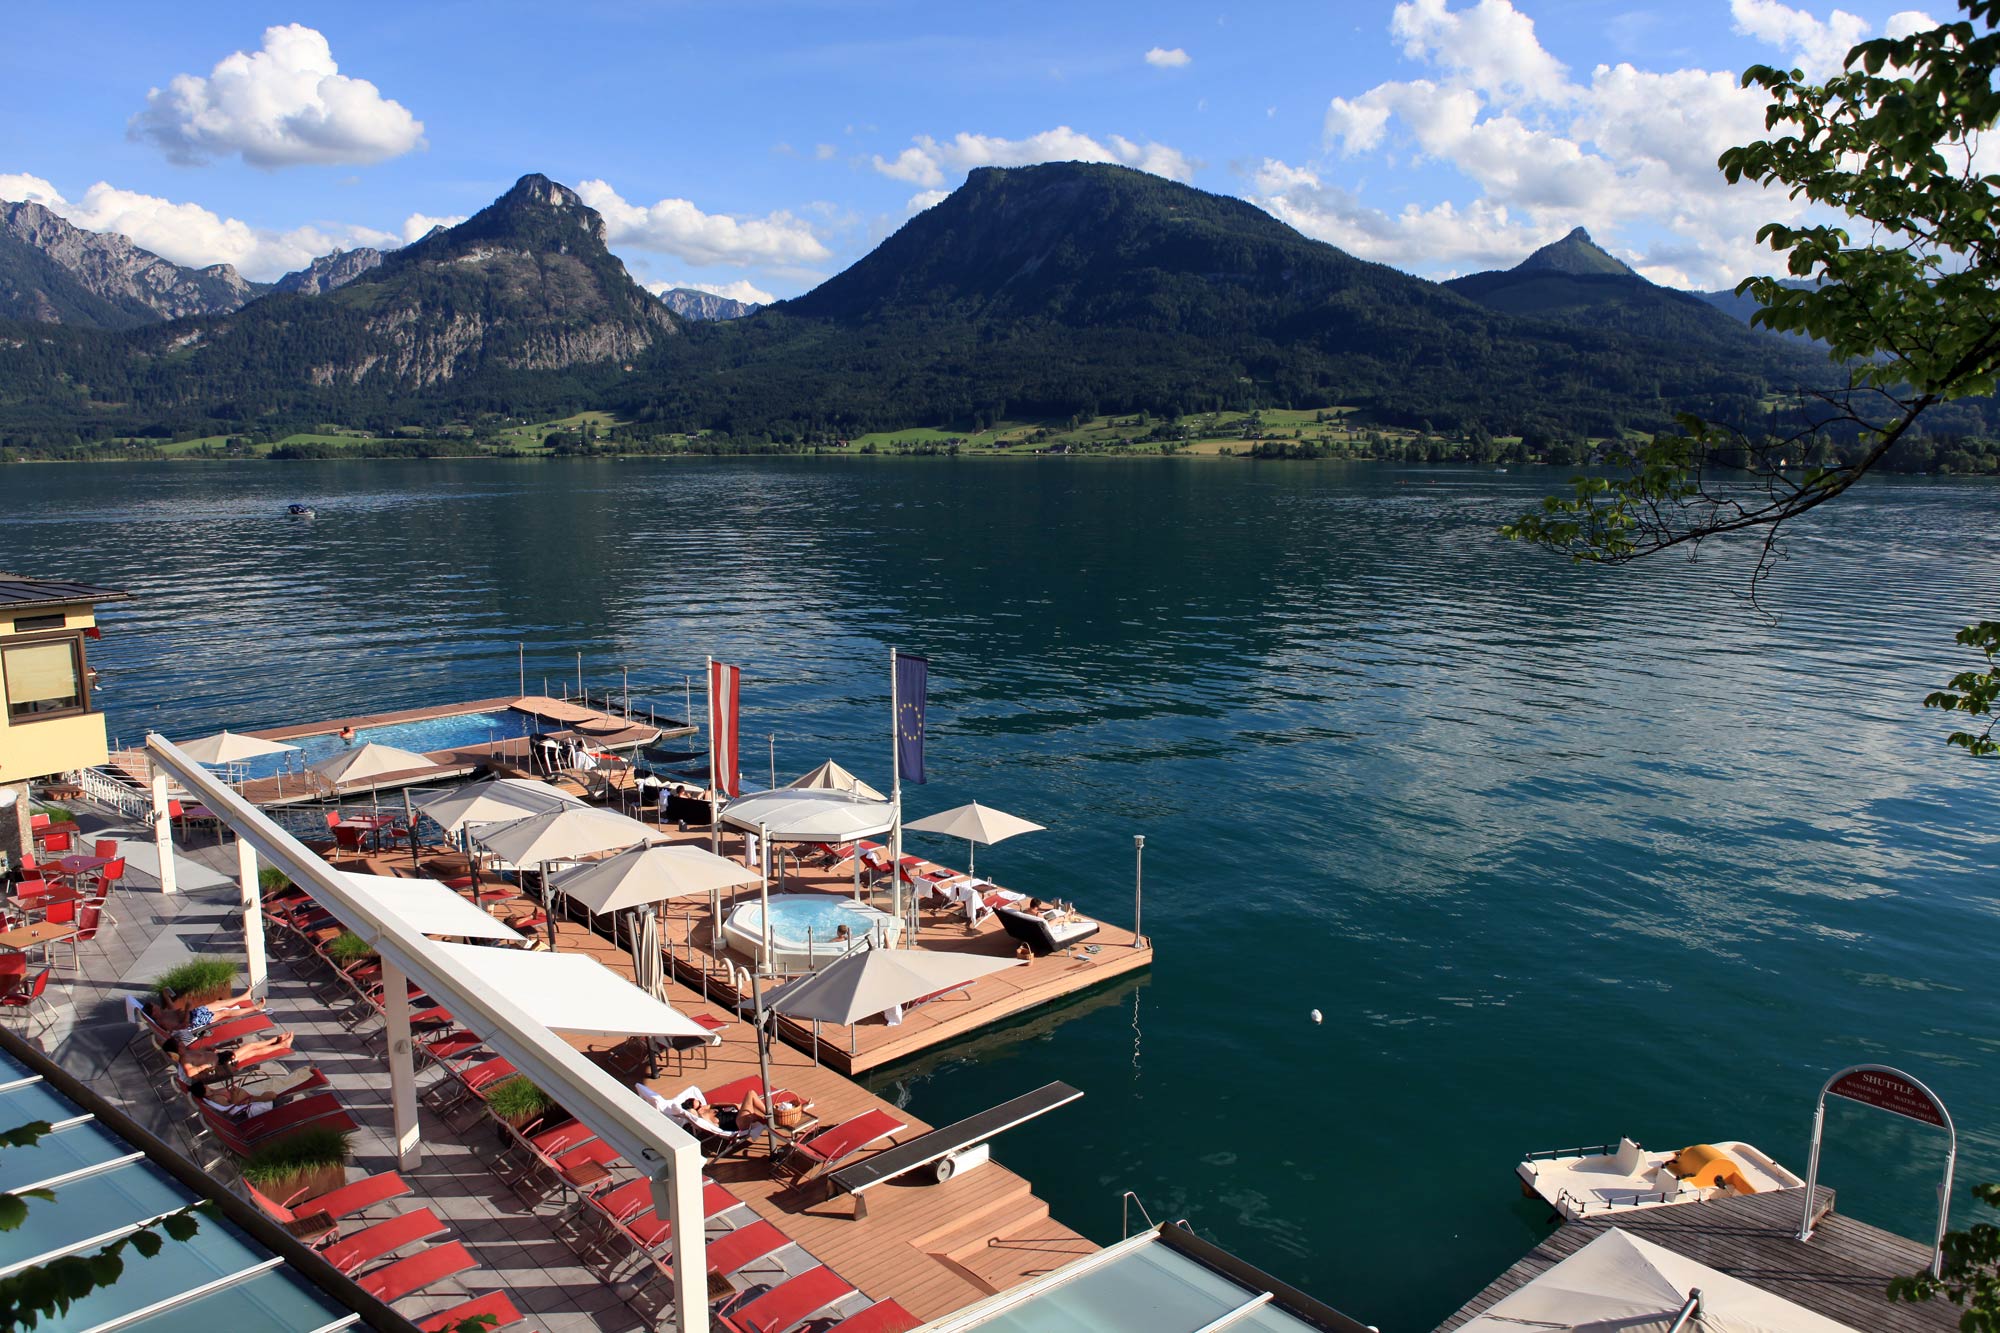 Dovolená v Rakousku jako kdysi – místo moře jezero